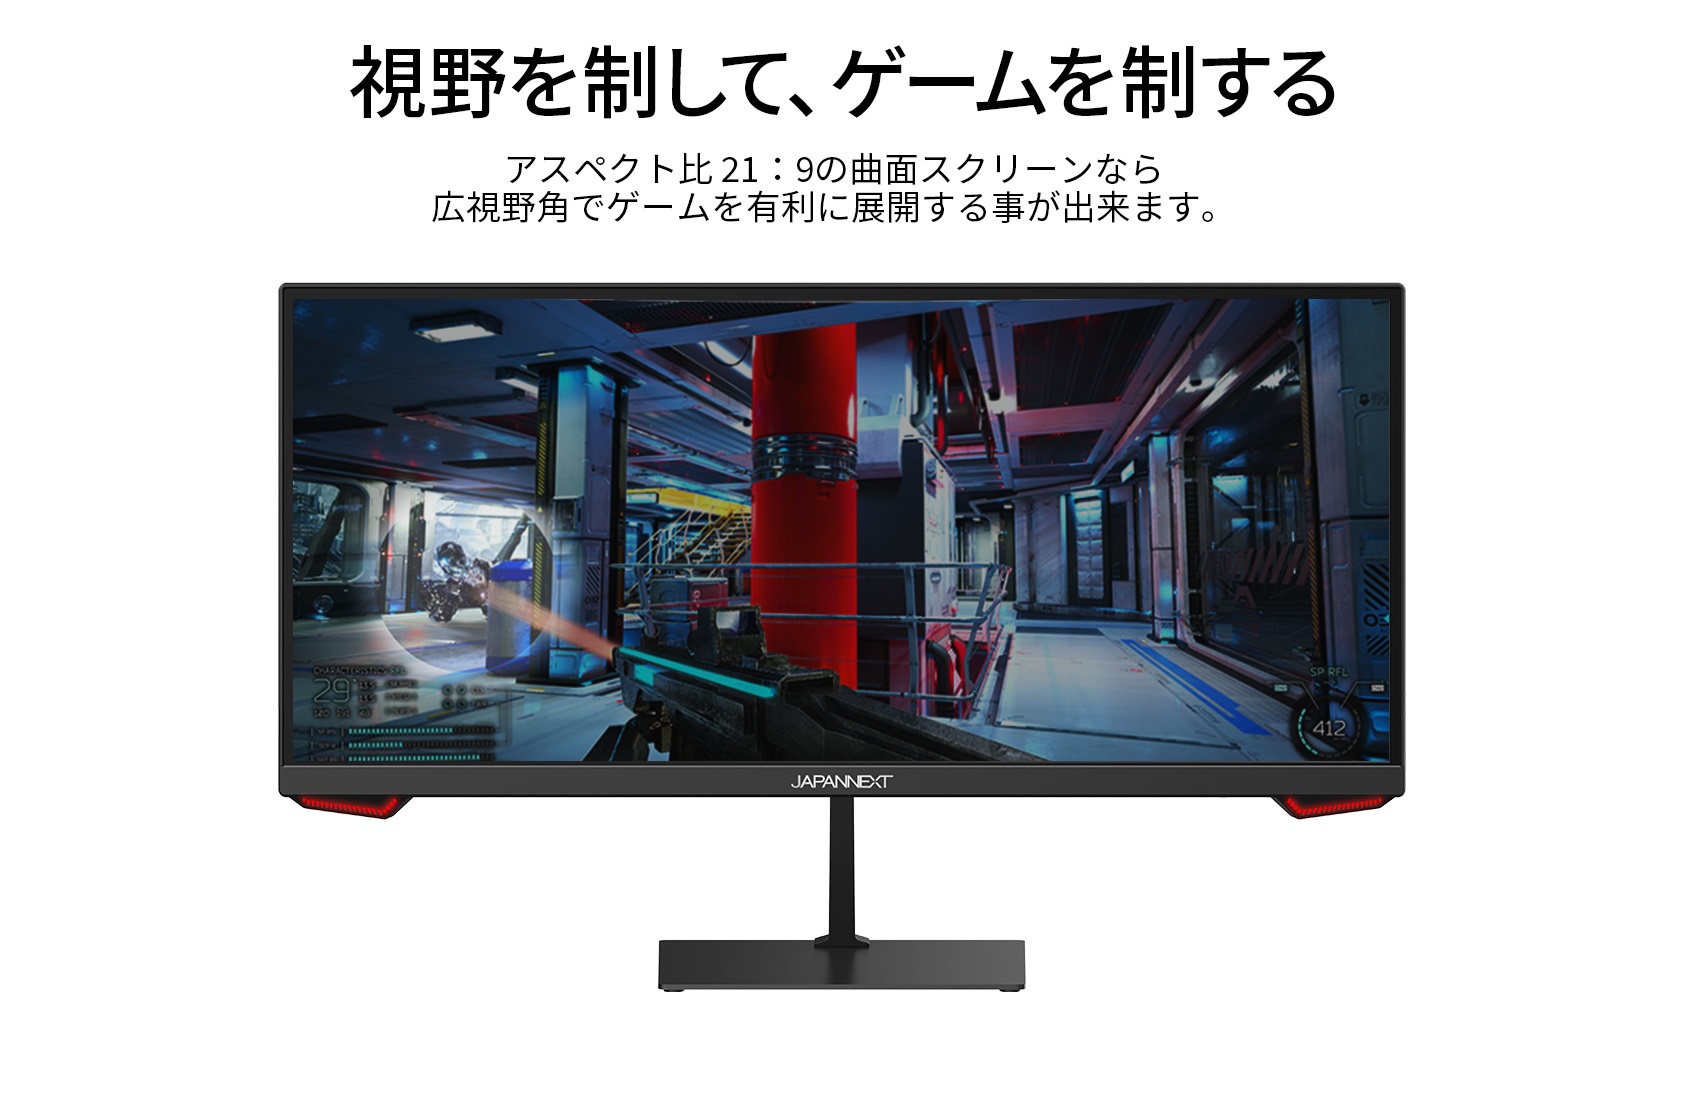 JAPANNEXT ゲーミングモニター 23.3インチ VAパネル WFHD ウルトラワイドモニター 200Hz PC ゲーム 高画質  JN-VG233WFHD200 ワイドモニター ジャパンネクスト